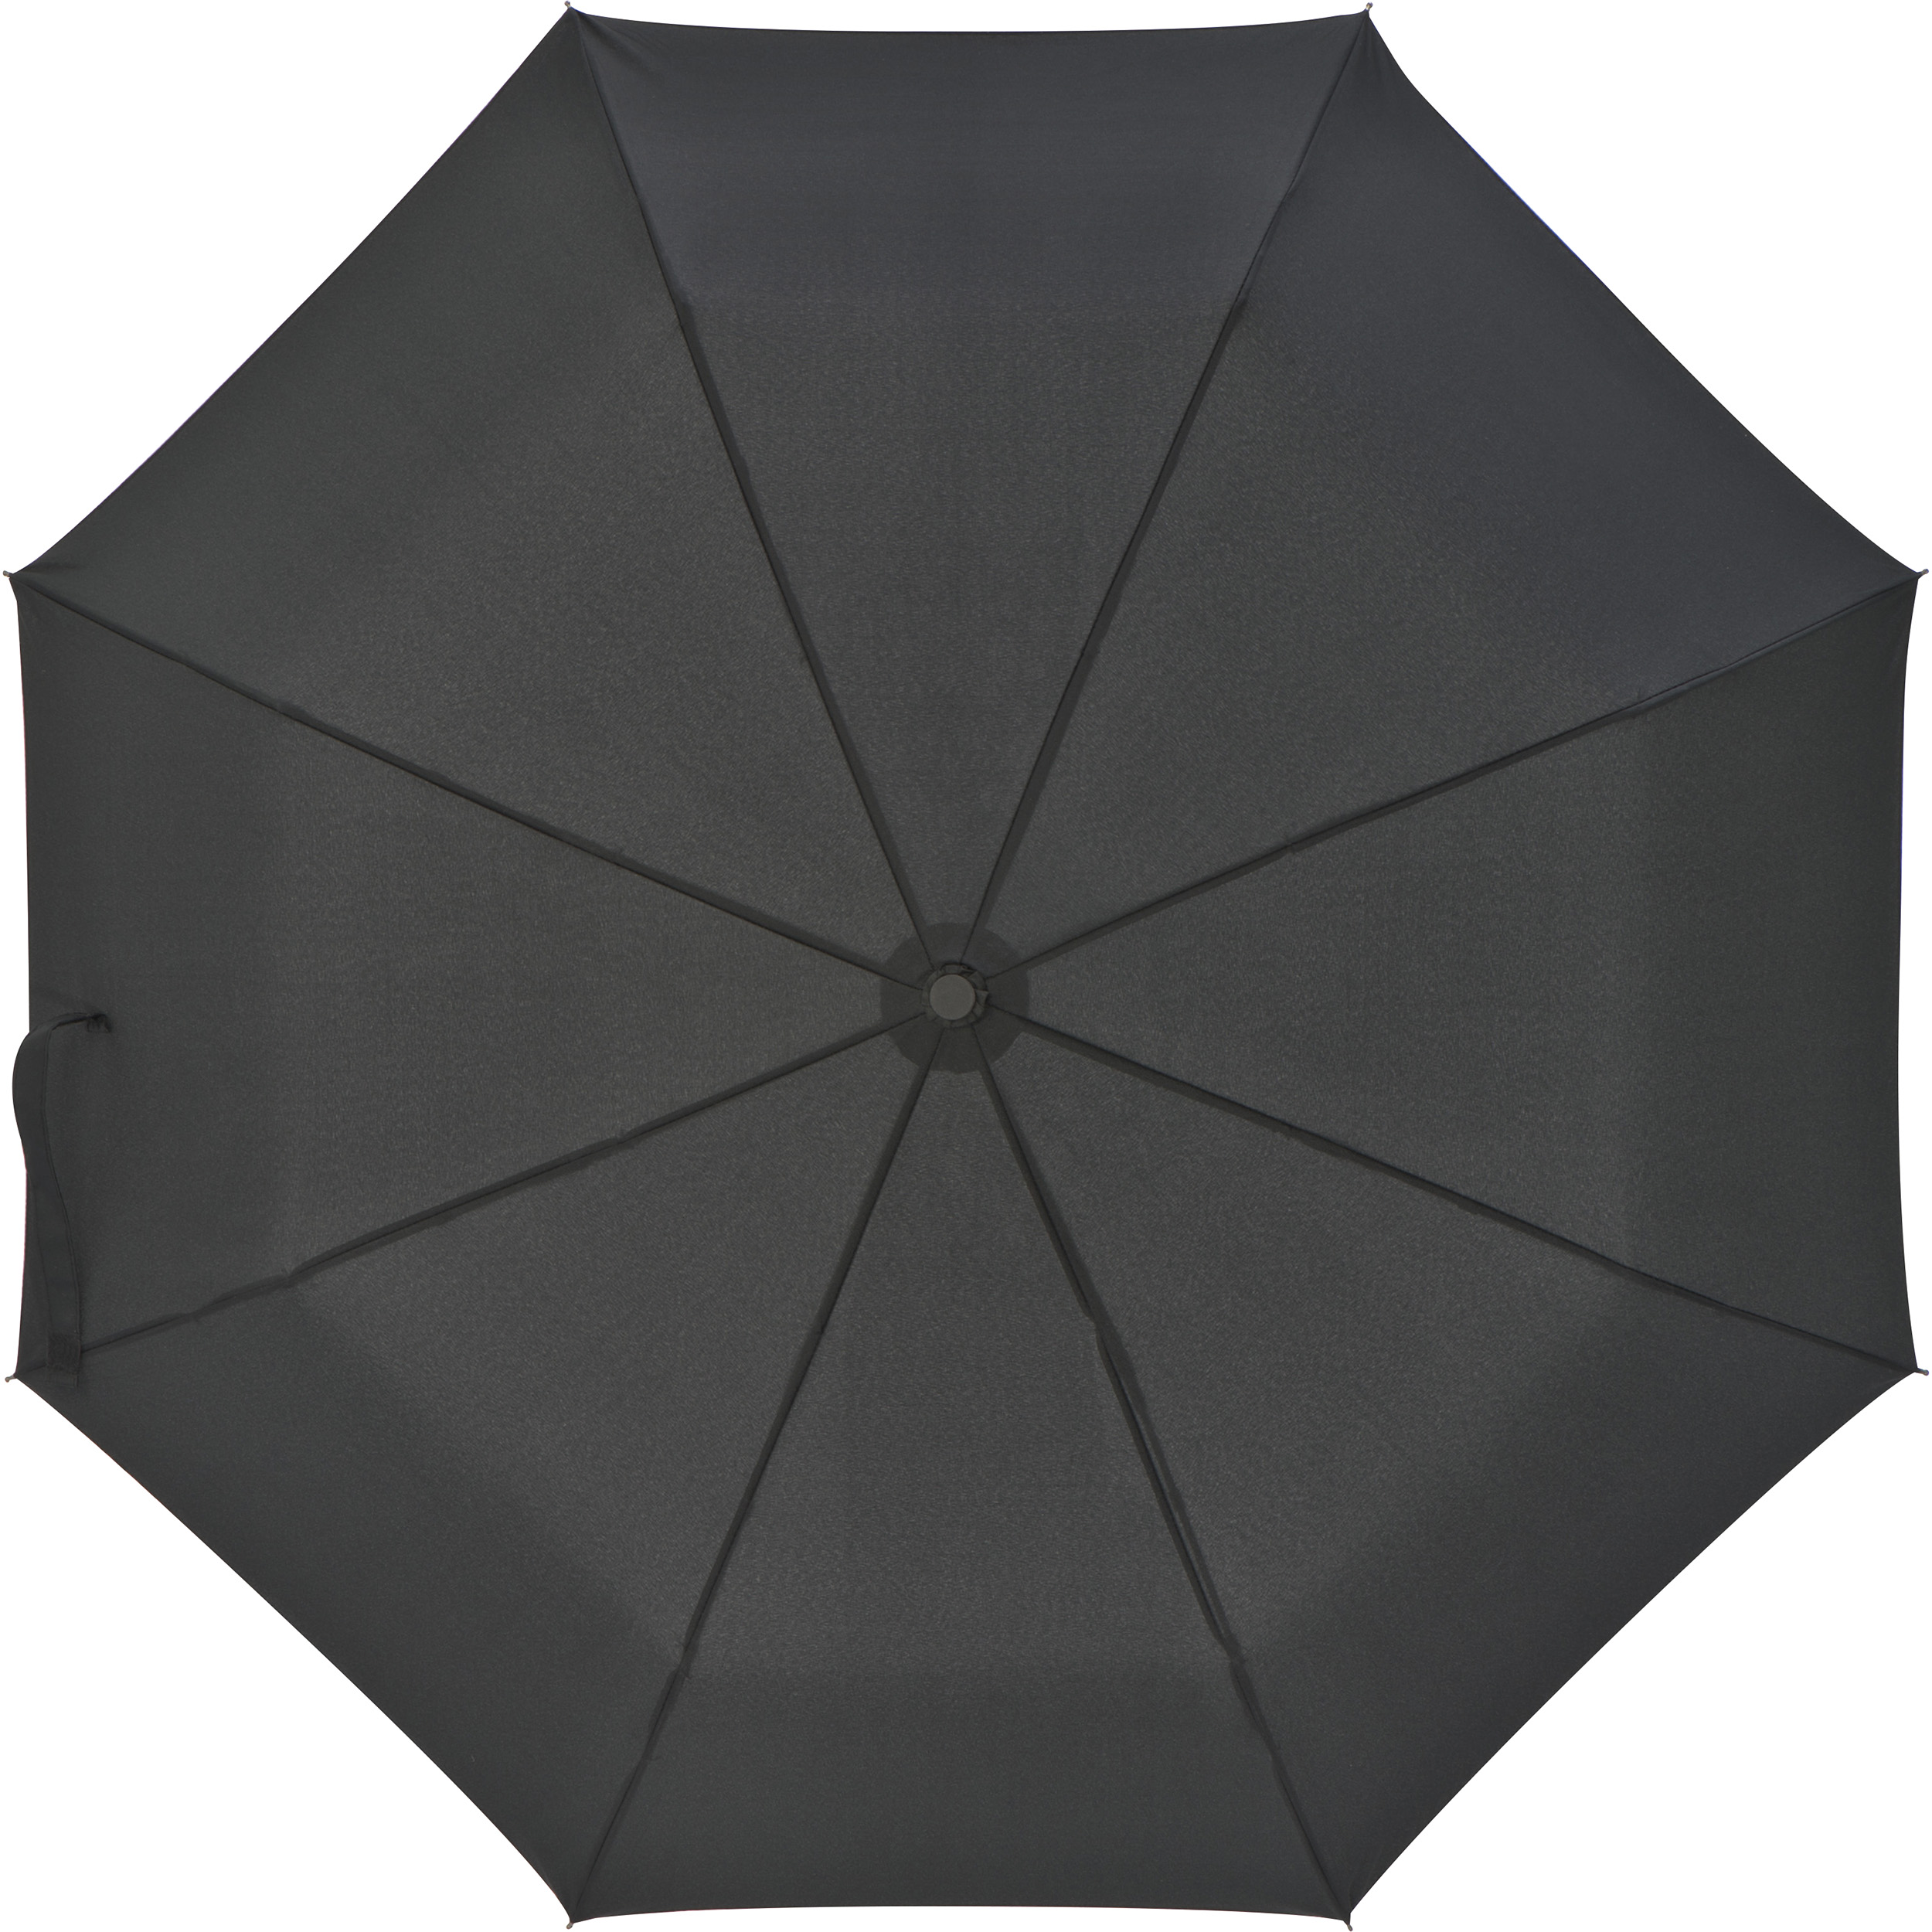 Ferraghini opvouwbare paraplu met handvat